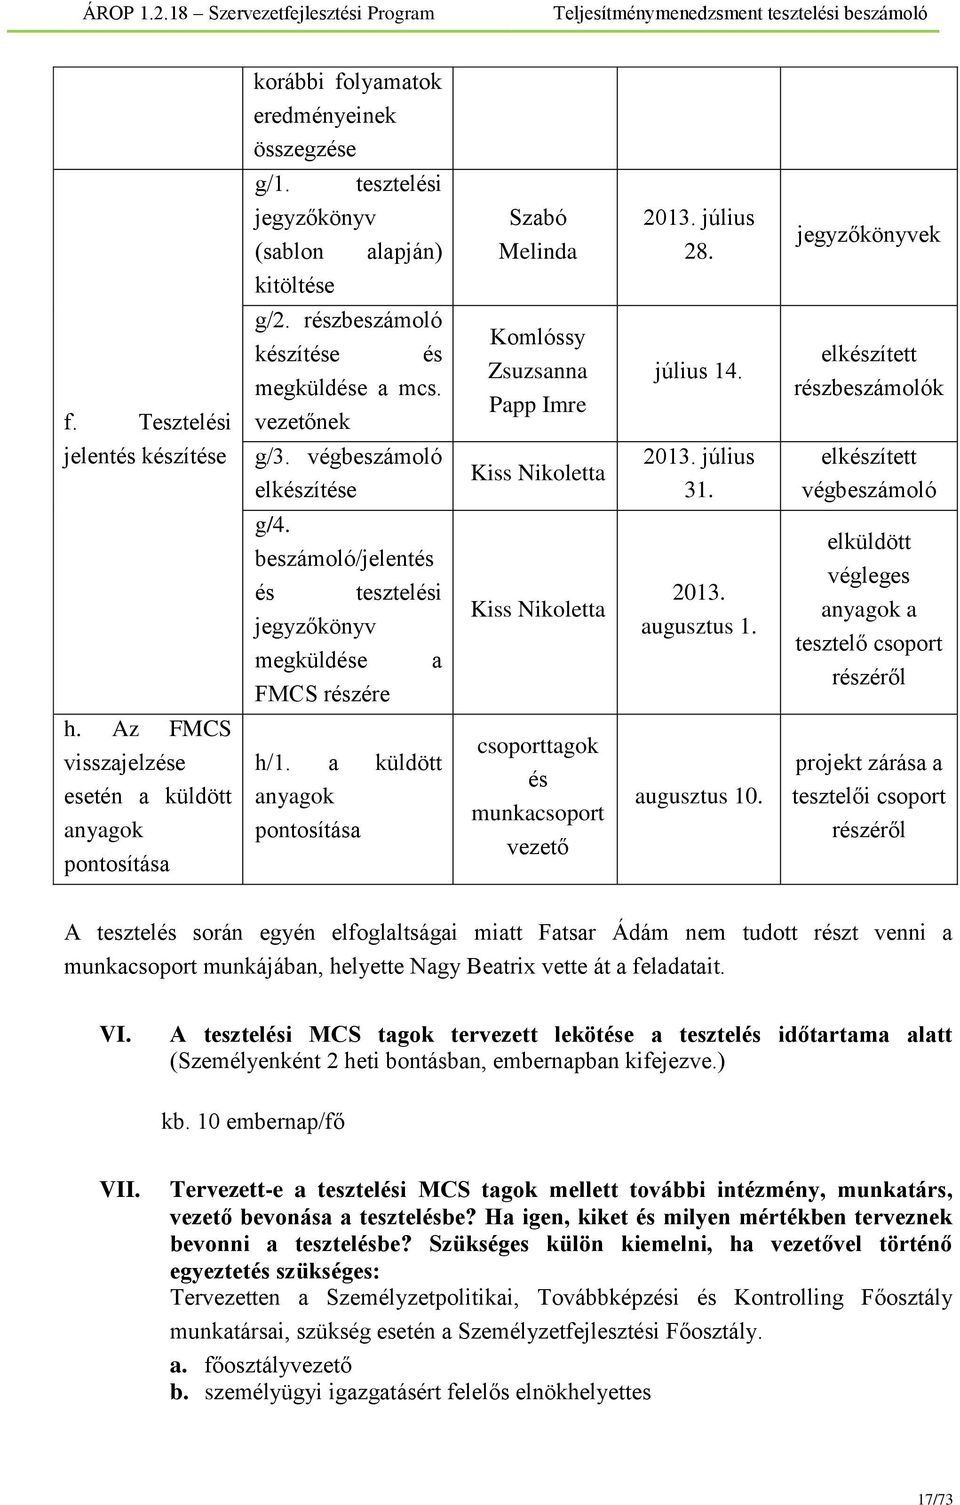 elkészített részbeszámolók elkészített végbeszámoló g/4. beszámoló/jelentés és tesztelési jegyzőkönyv megküldése a FMCS részére Kiss Nikoletta 2013. augusztus 1.